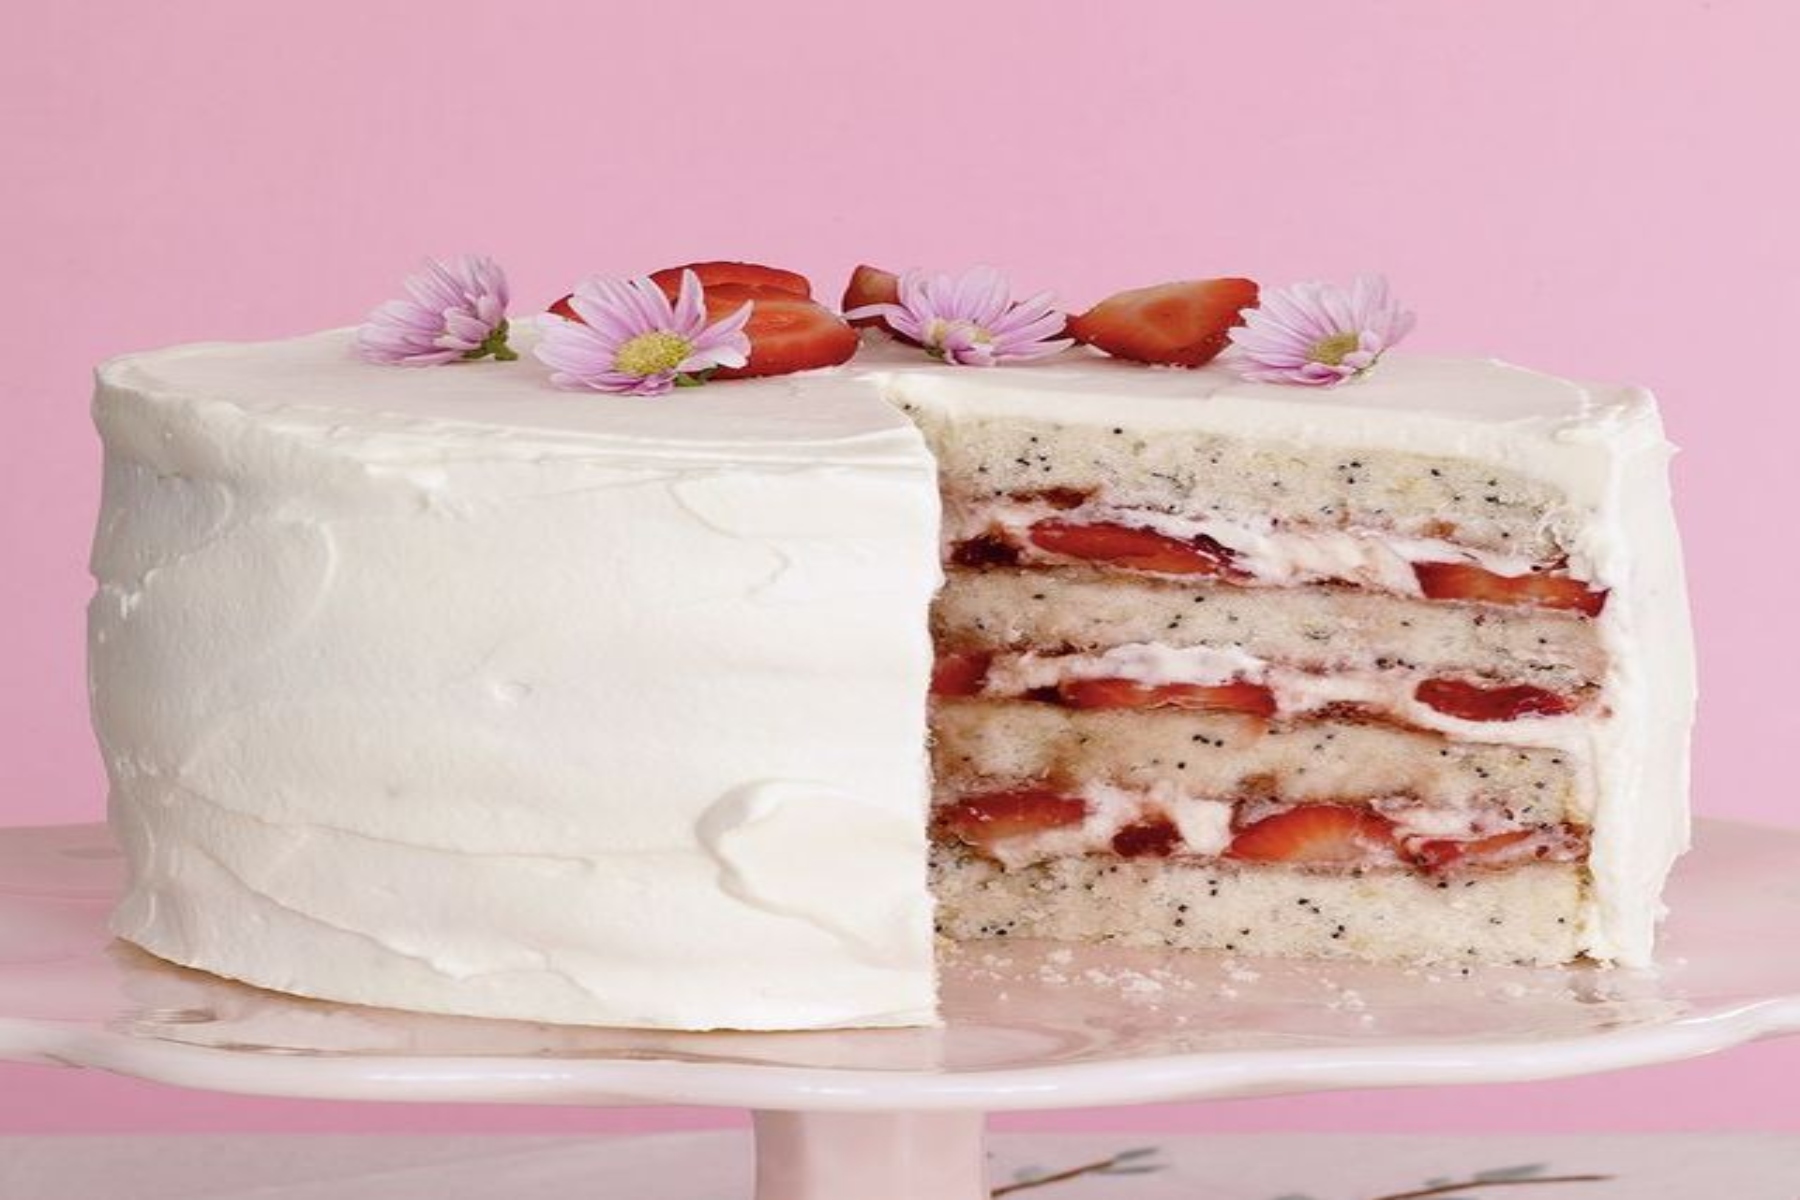 Τούρτα γενεθλίων: Πώς να φτιάξετε την τέλεια τούρτα γενεθλίων για την μητέρα σας;